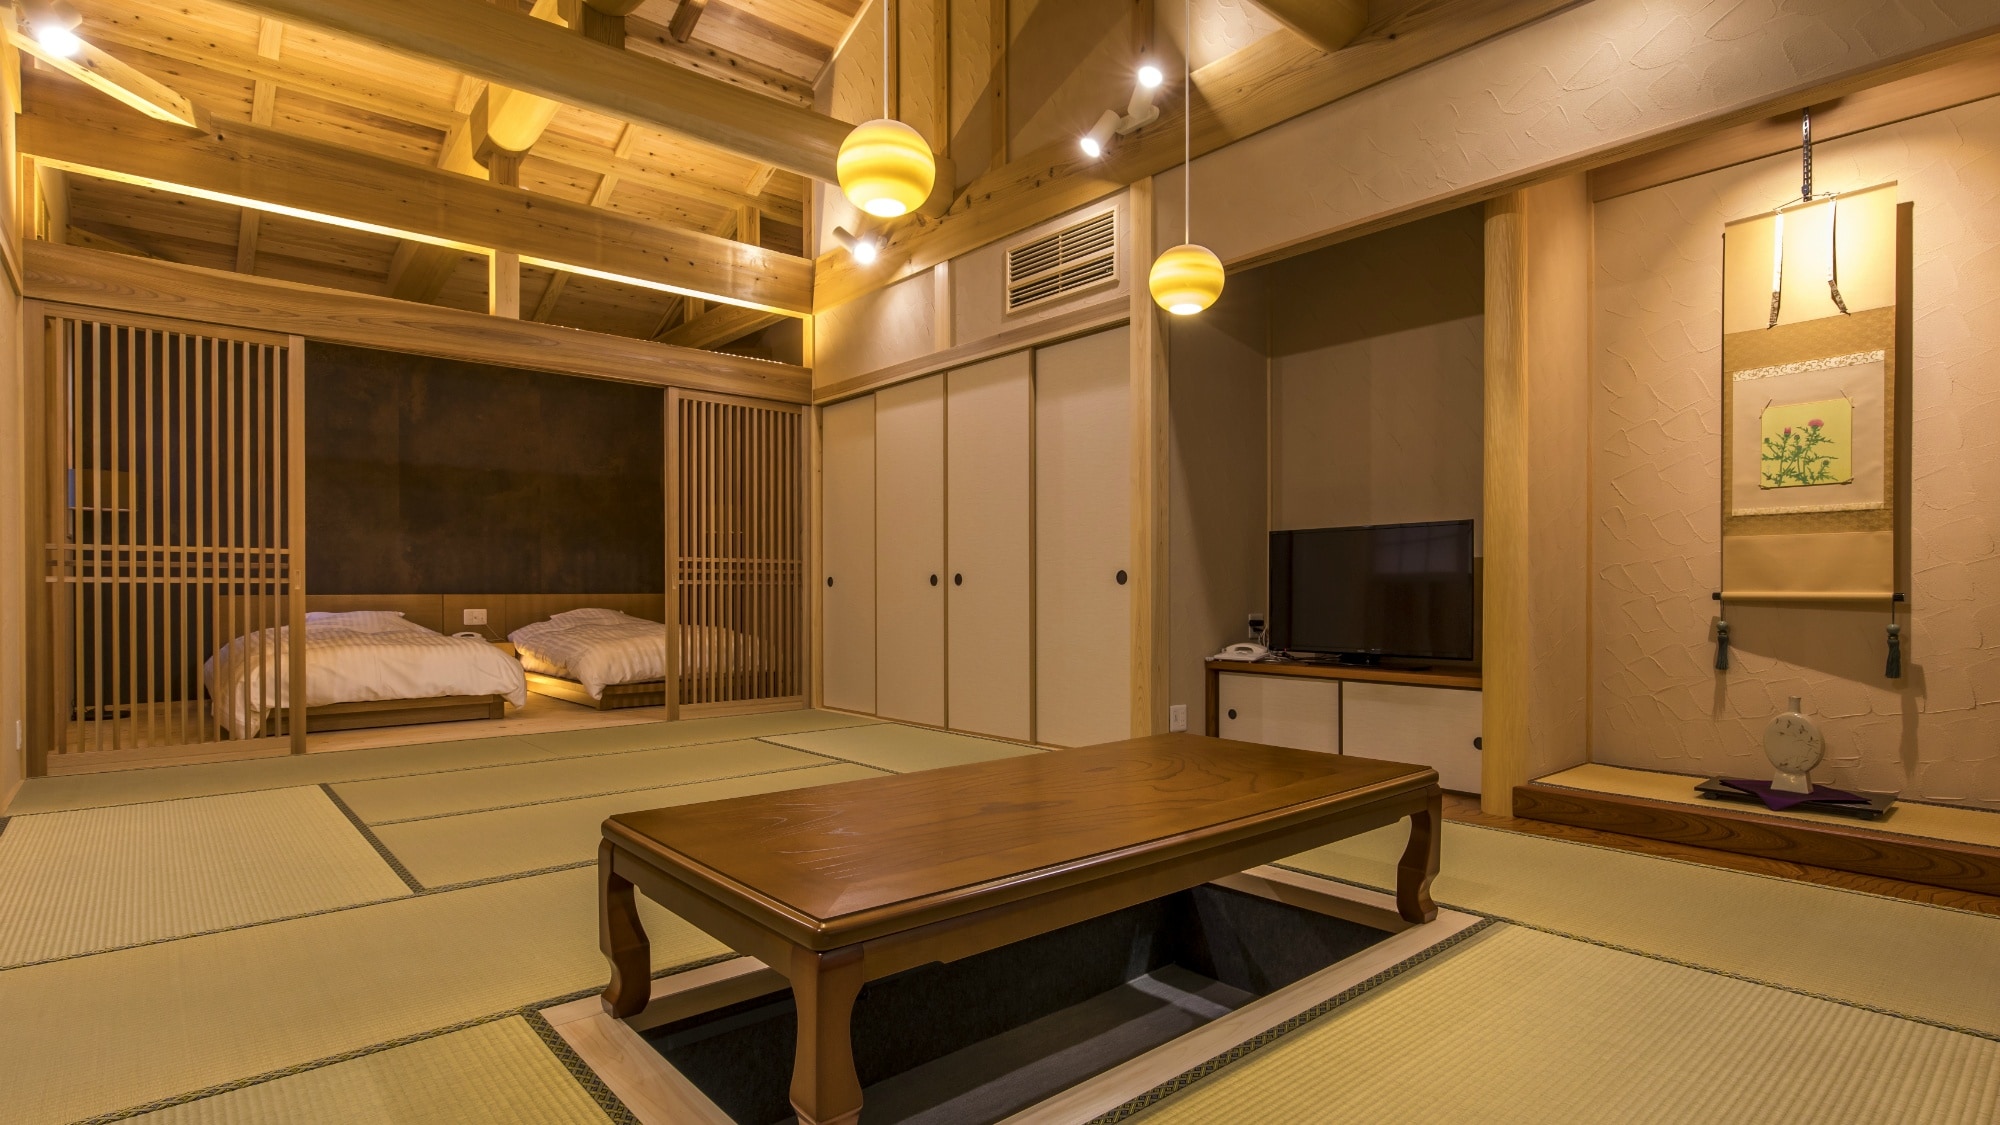 【일본식 스위트】 12 다다미의 일본식 객실과 세미 더블 침실을 갖춘 일본식 현대적인 객실입니다.